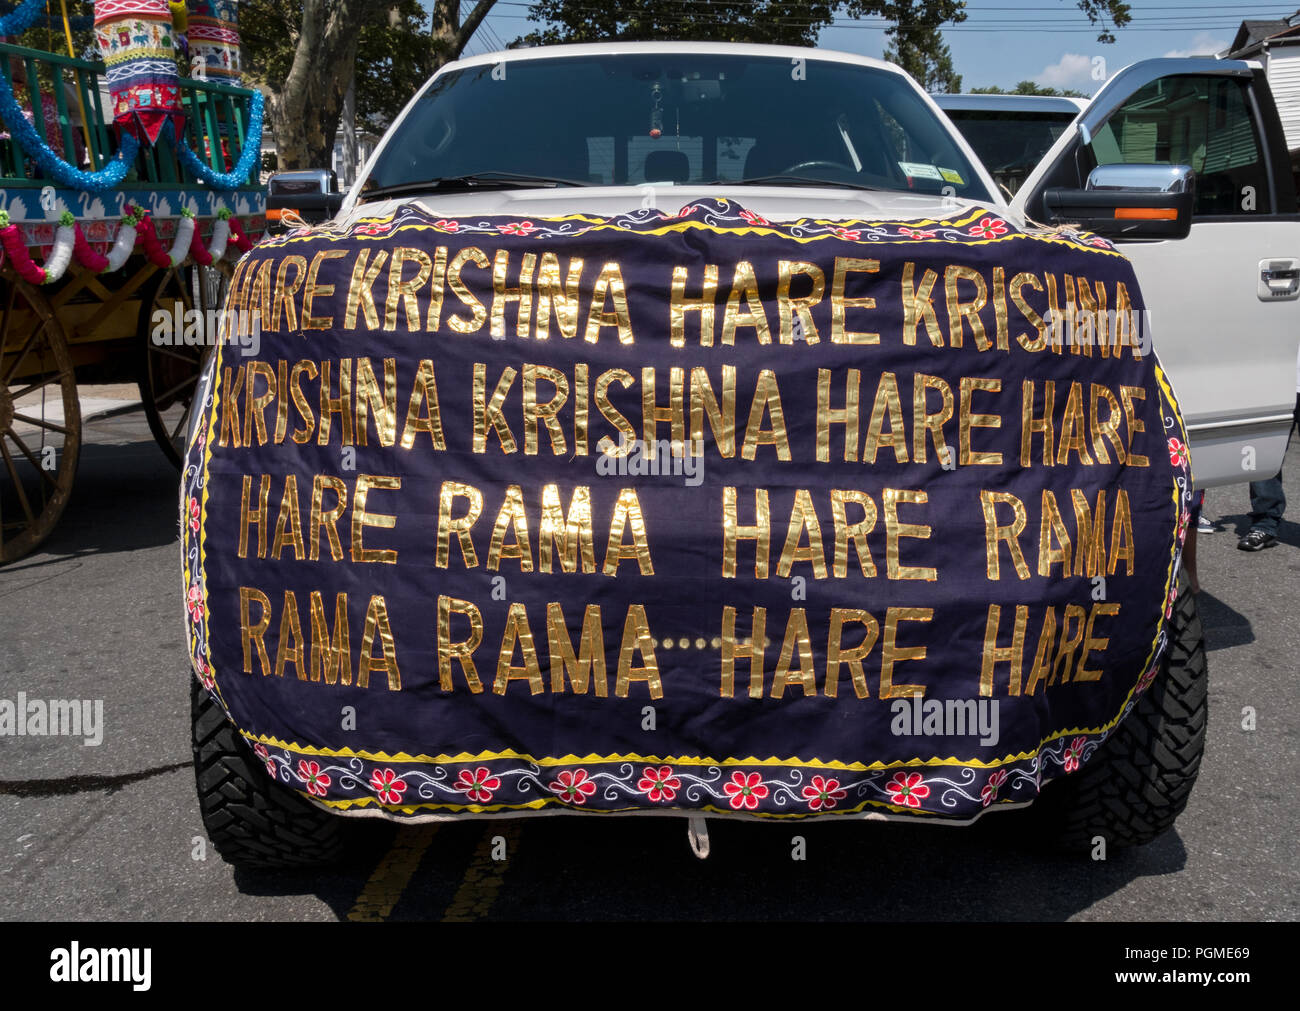 Ein SUV im Queens, New York Rathayatra Parade mit den 16 Wort Hare Krishna mantra auf einen Banner. Stockfoto